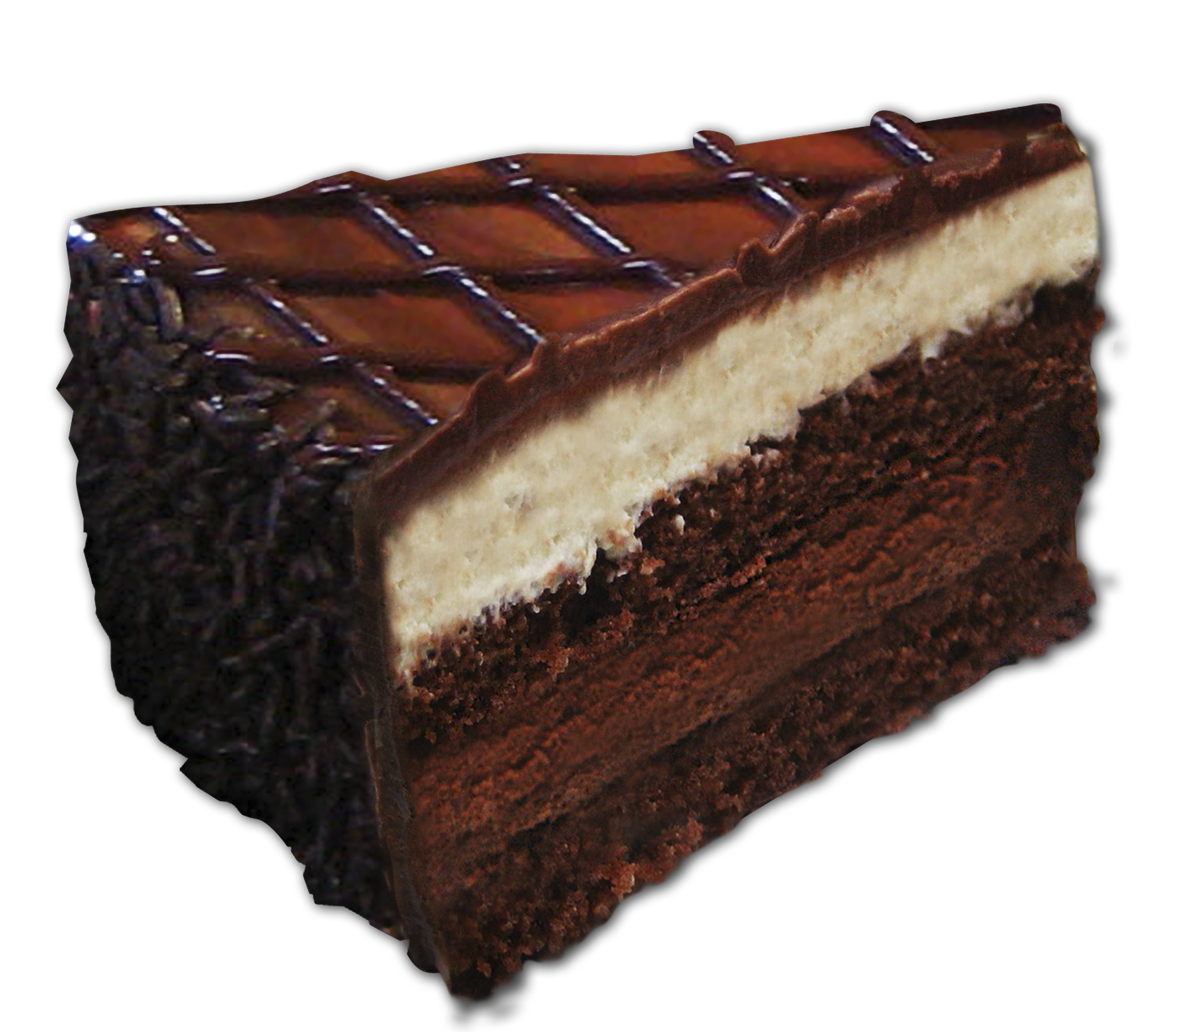 توییتر \ Pasteles Bon Dessert در توییتر: «Tienes que probar nuestro  #TrufaDeChocolate #BonDessert hecho con @TurinChocolates, ¡Ya es todo un  éxito! /vy8E3Xeq14»